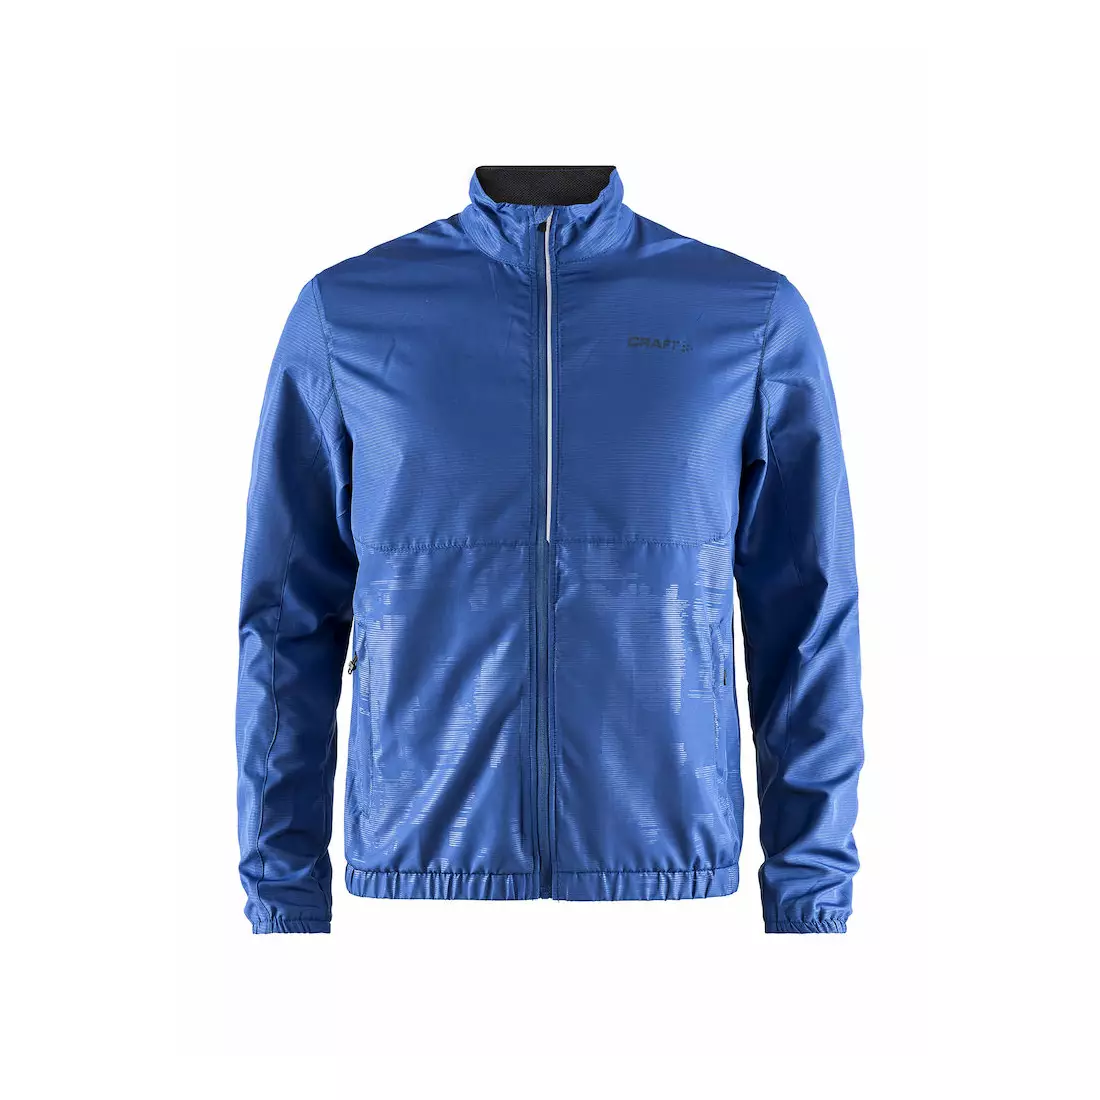 CRAFT EAZE light running jacket, men, blue 1906402-353000